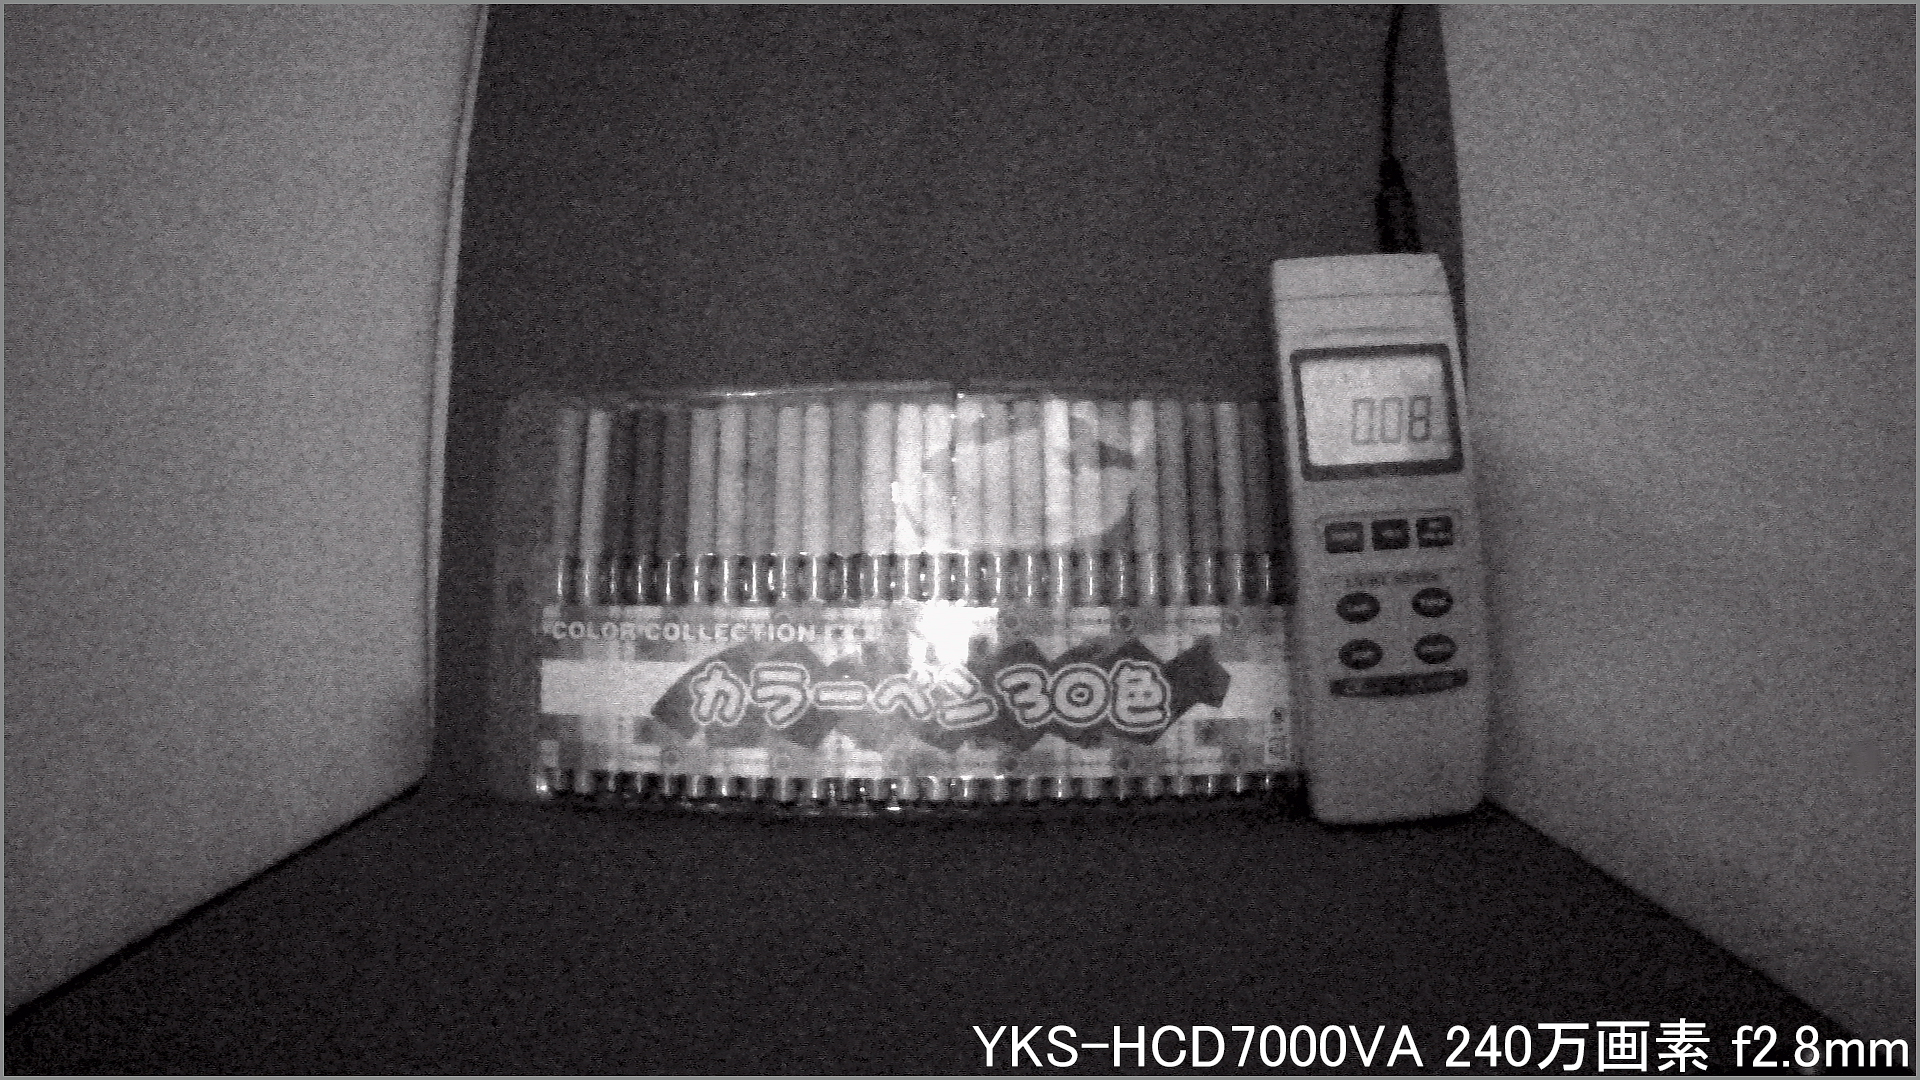 YKS-HCD7000VA カメラから約40cm離れた被写体を暗視撮影